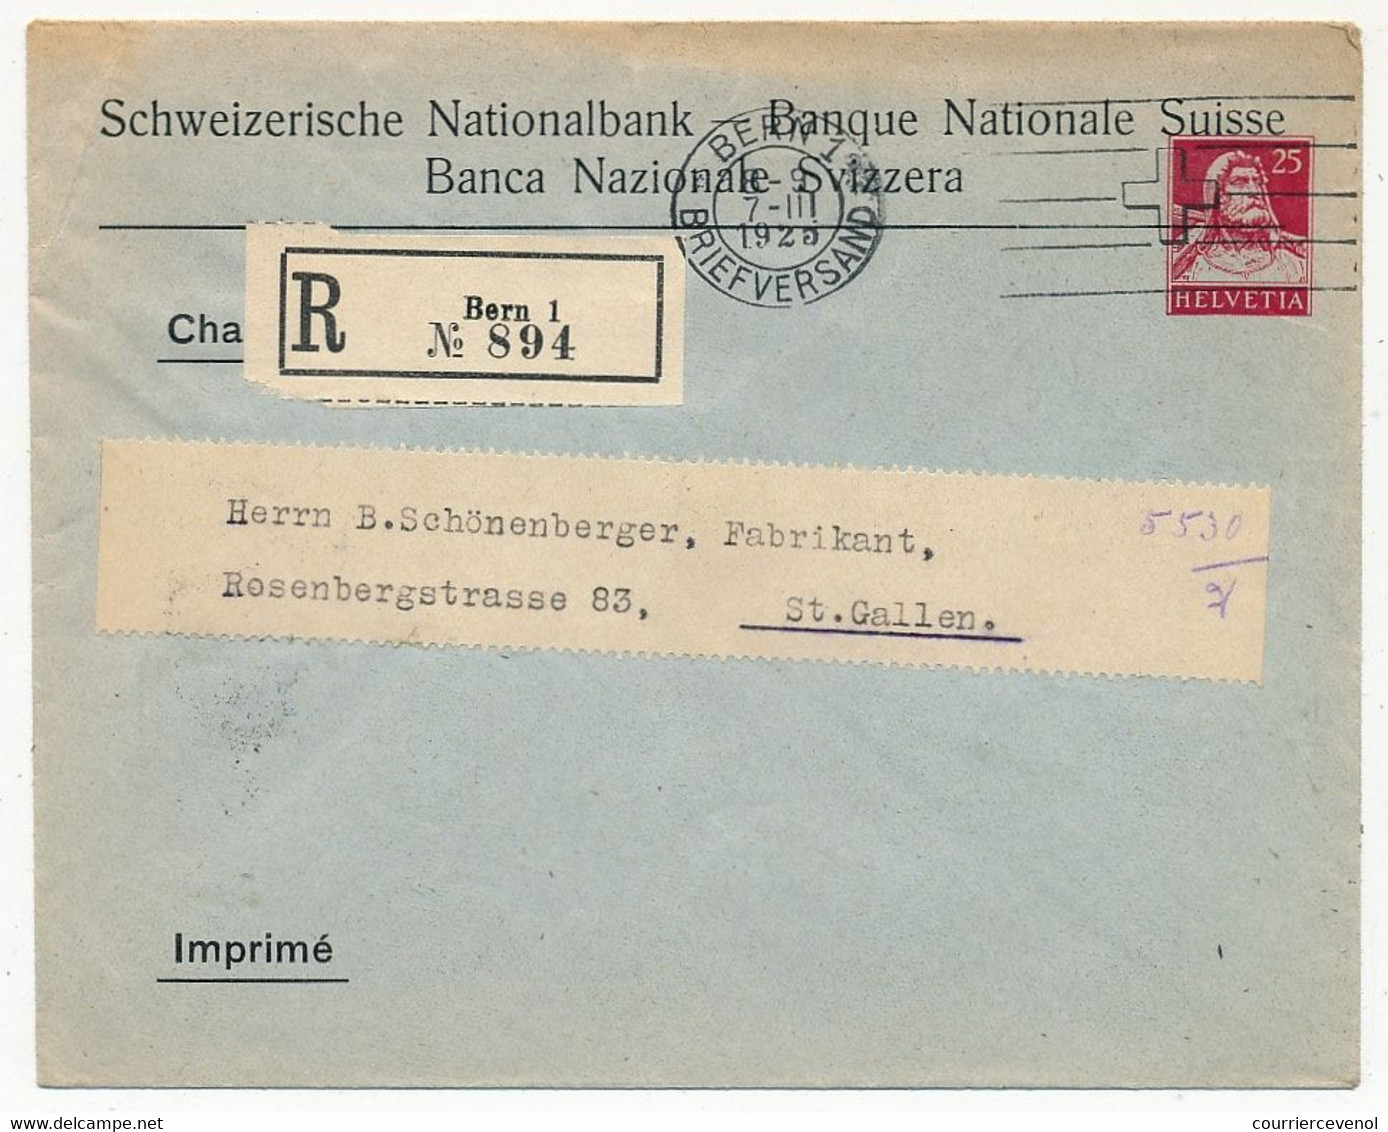 SUISSE - Enveloppe (Entier Postal PRIVÉ) 25c Helvetia - Banque Nationale Suisse - Recommandée Bern 1 - 1925 - Entiers Postaux